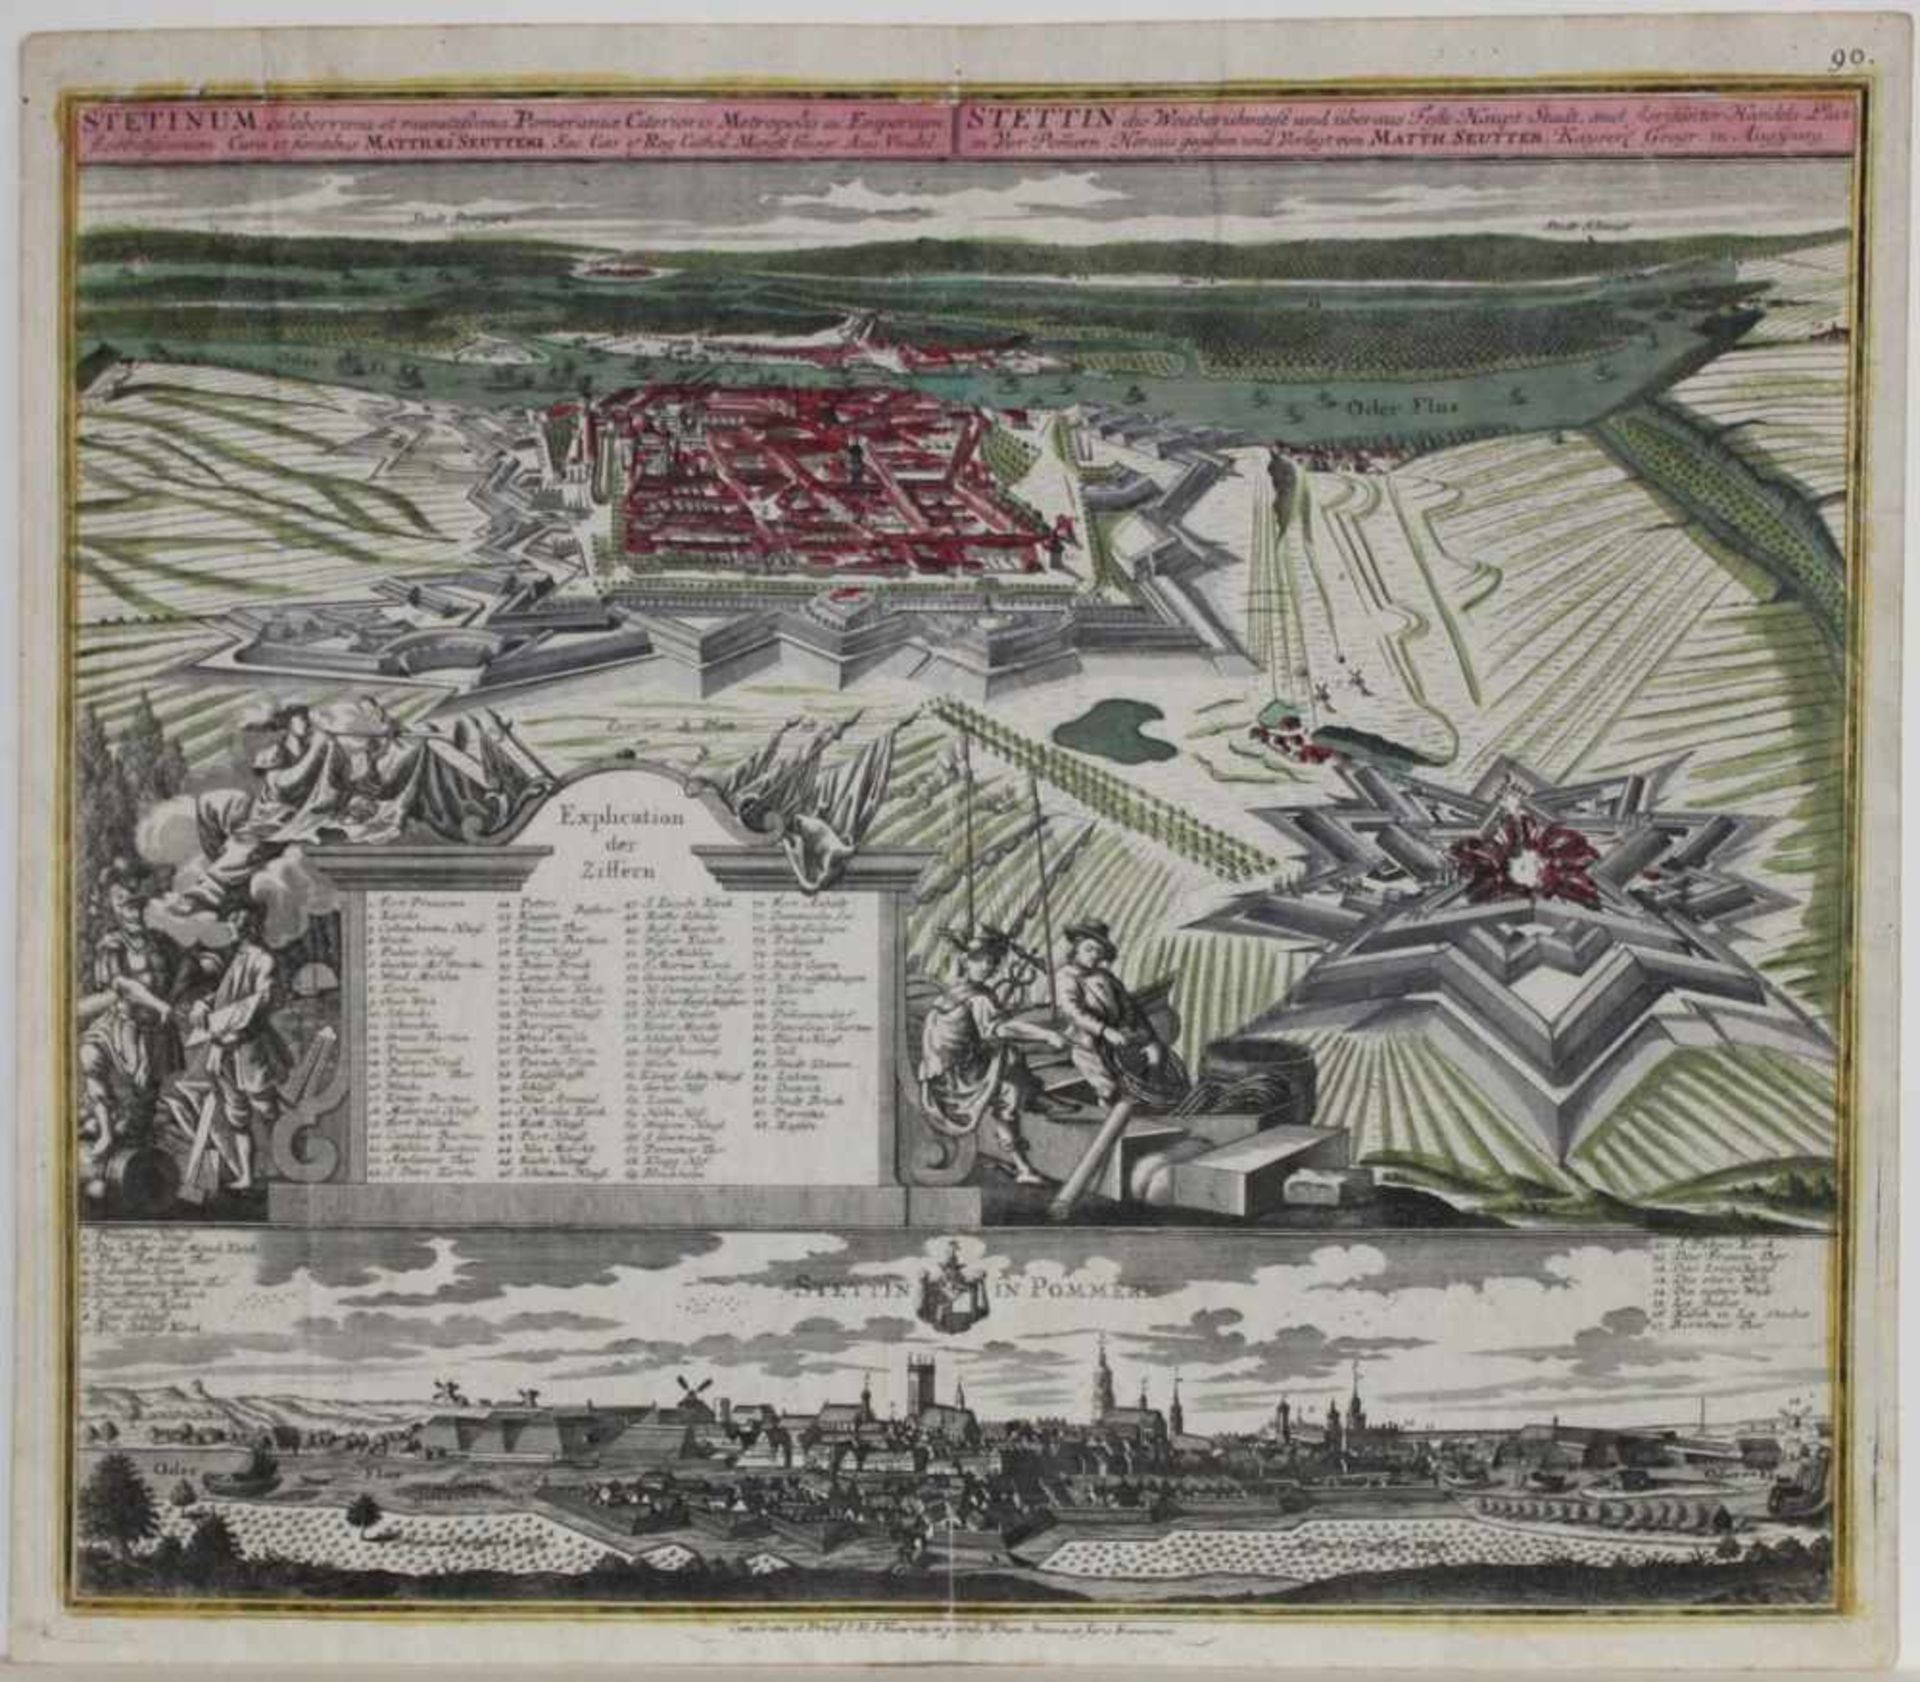 Stettin. Vogelschauplanmit Panorama - Ansicht. Kolorierter Kupferstich von Matth. Seutter, Augsburg,